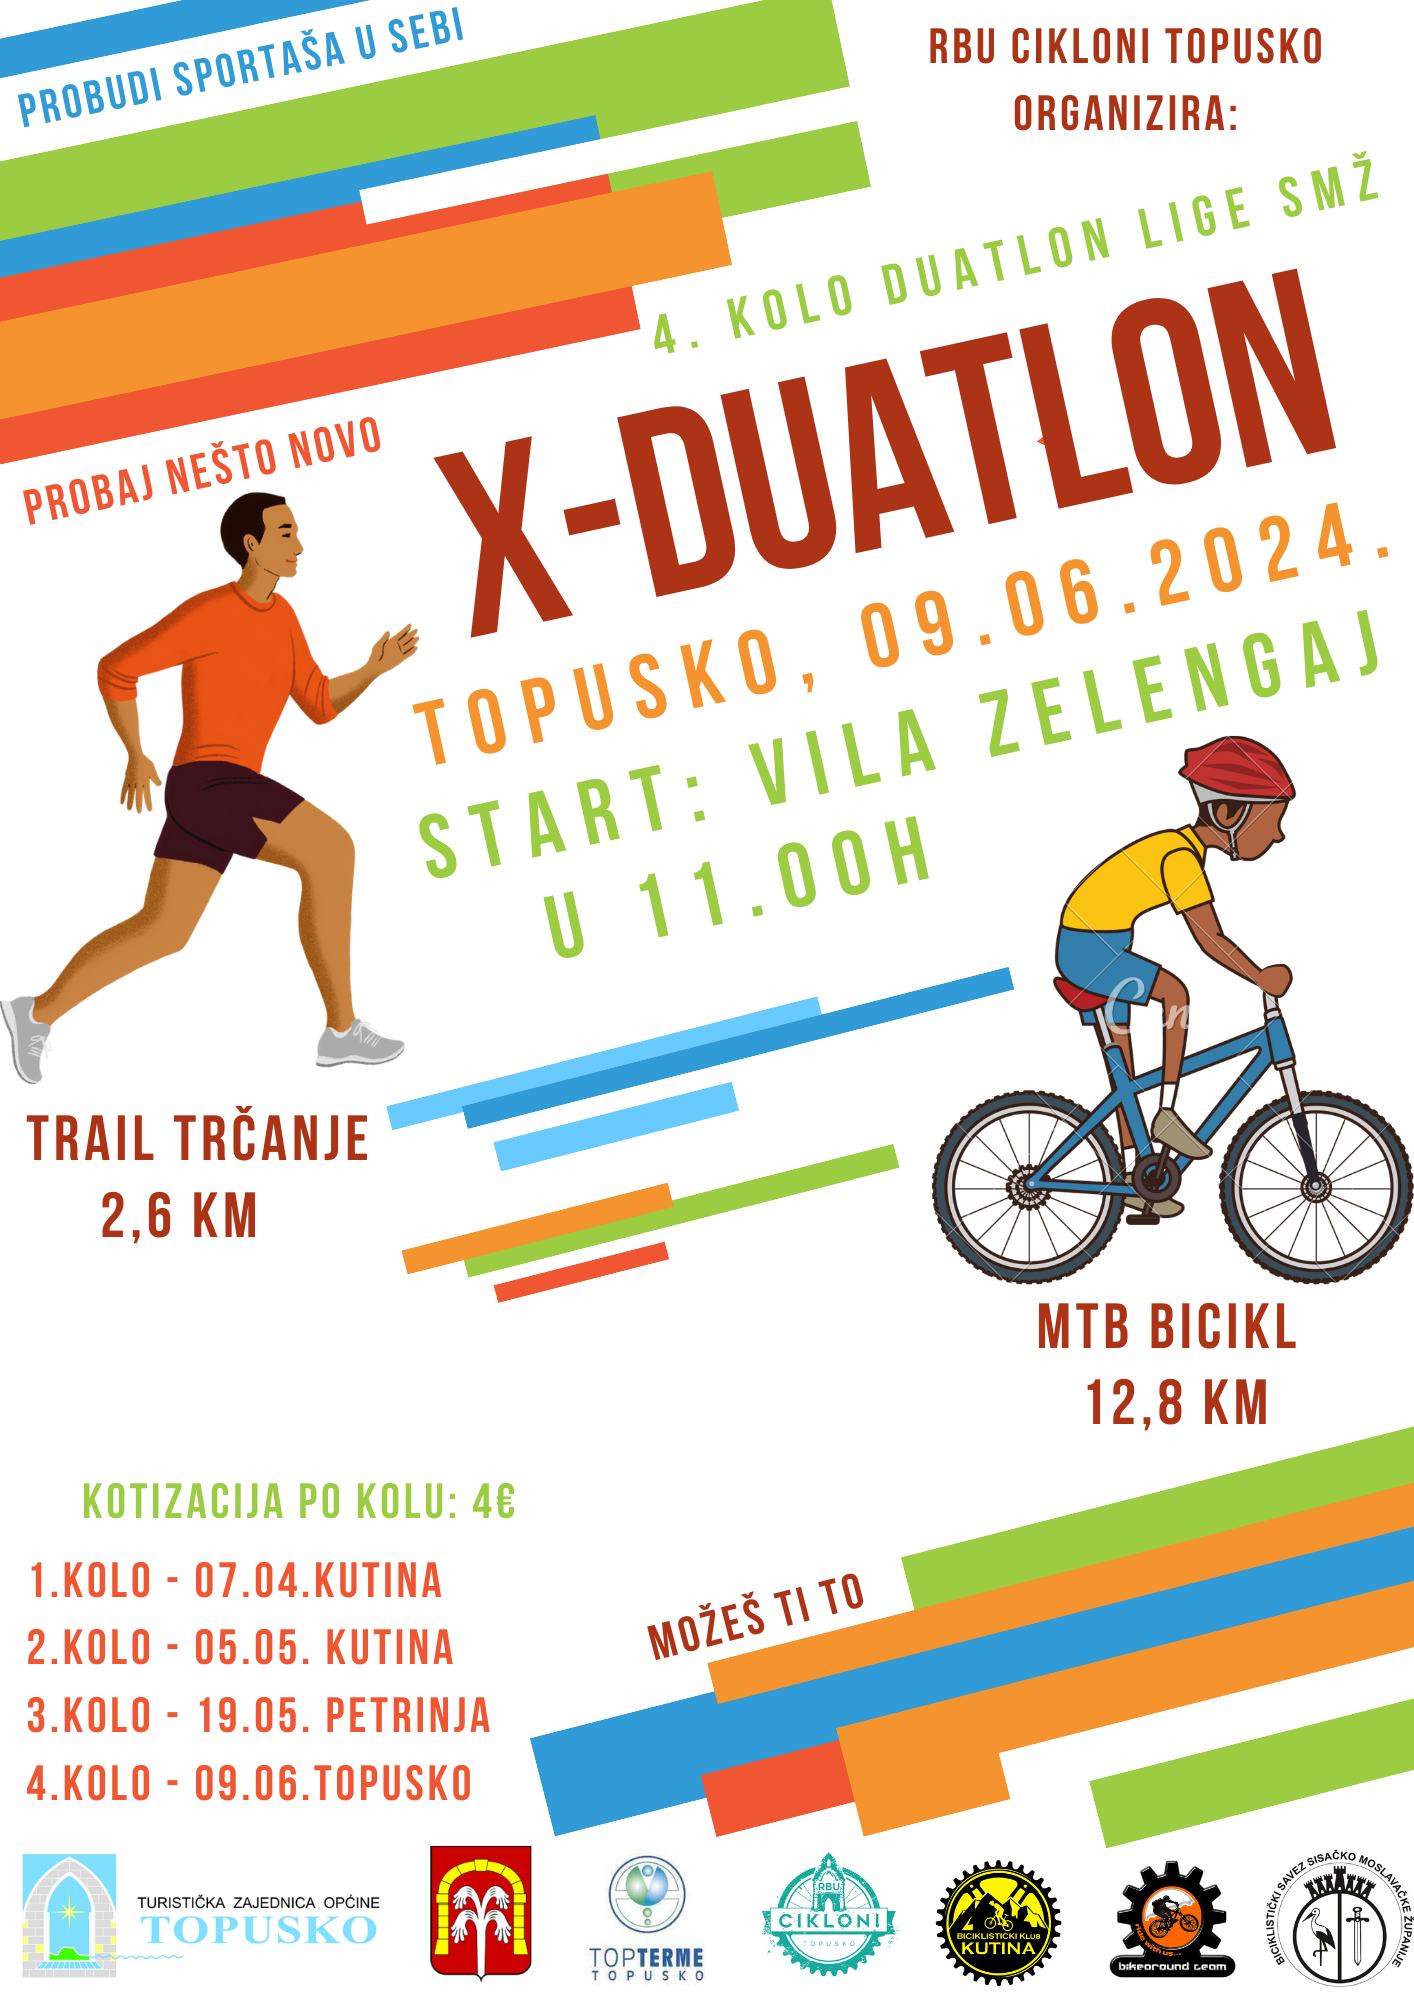 X – DUATLON 09.06.2024.